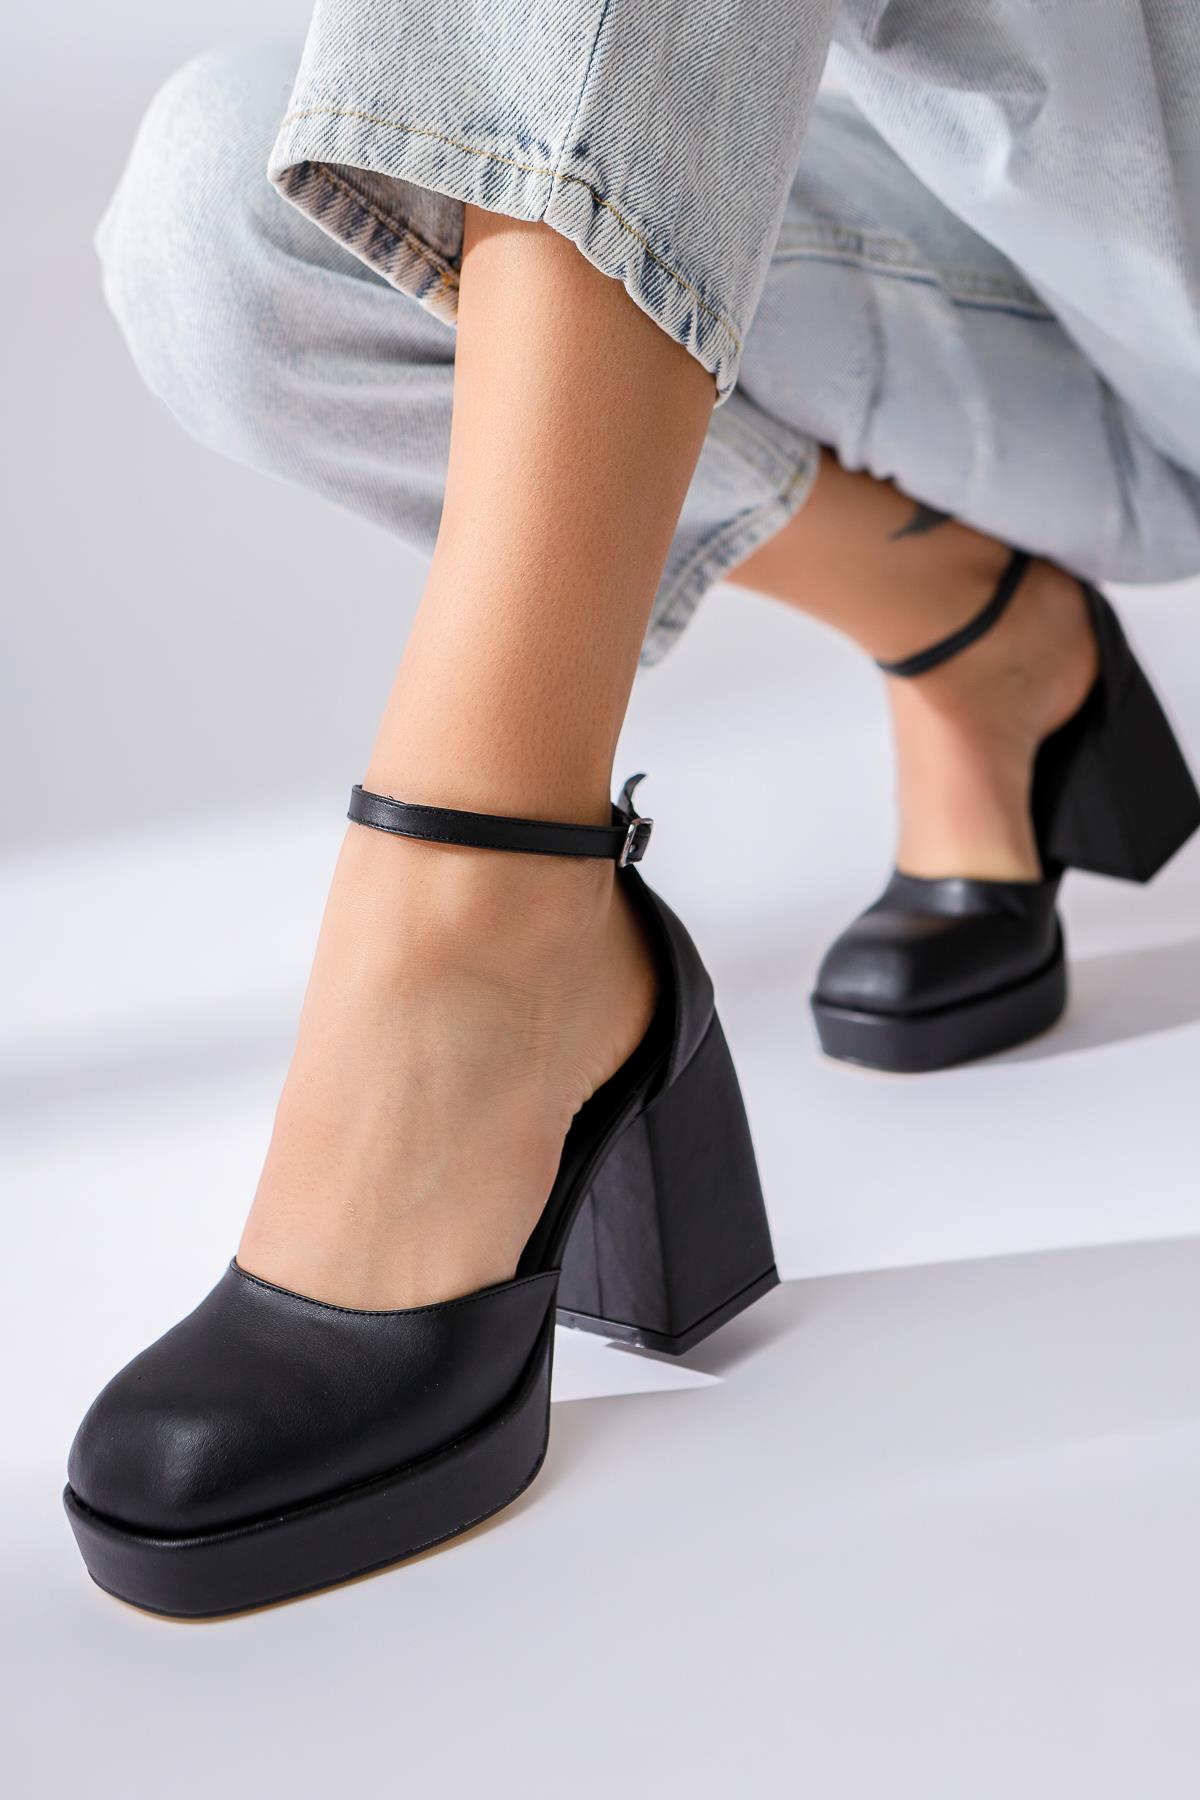 Aubrey Siyah Platformlu Kalın Topuklu Ayakkabı